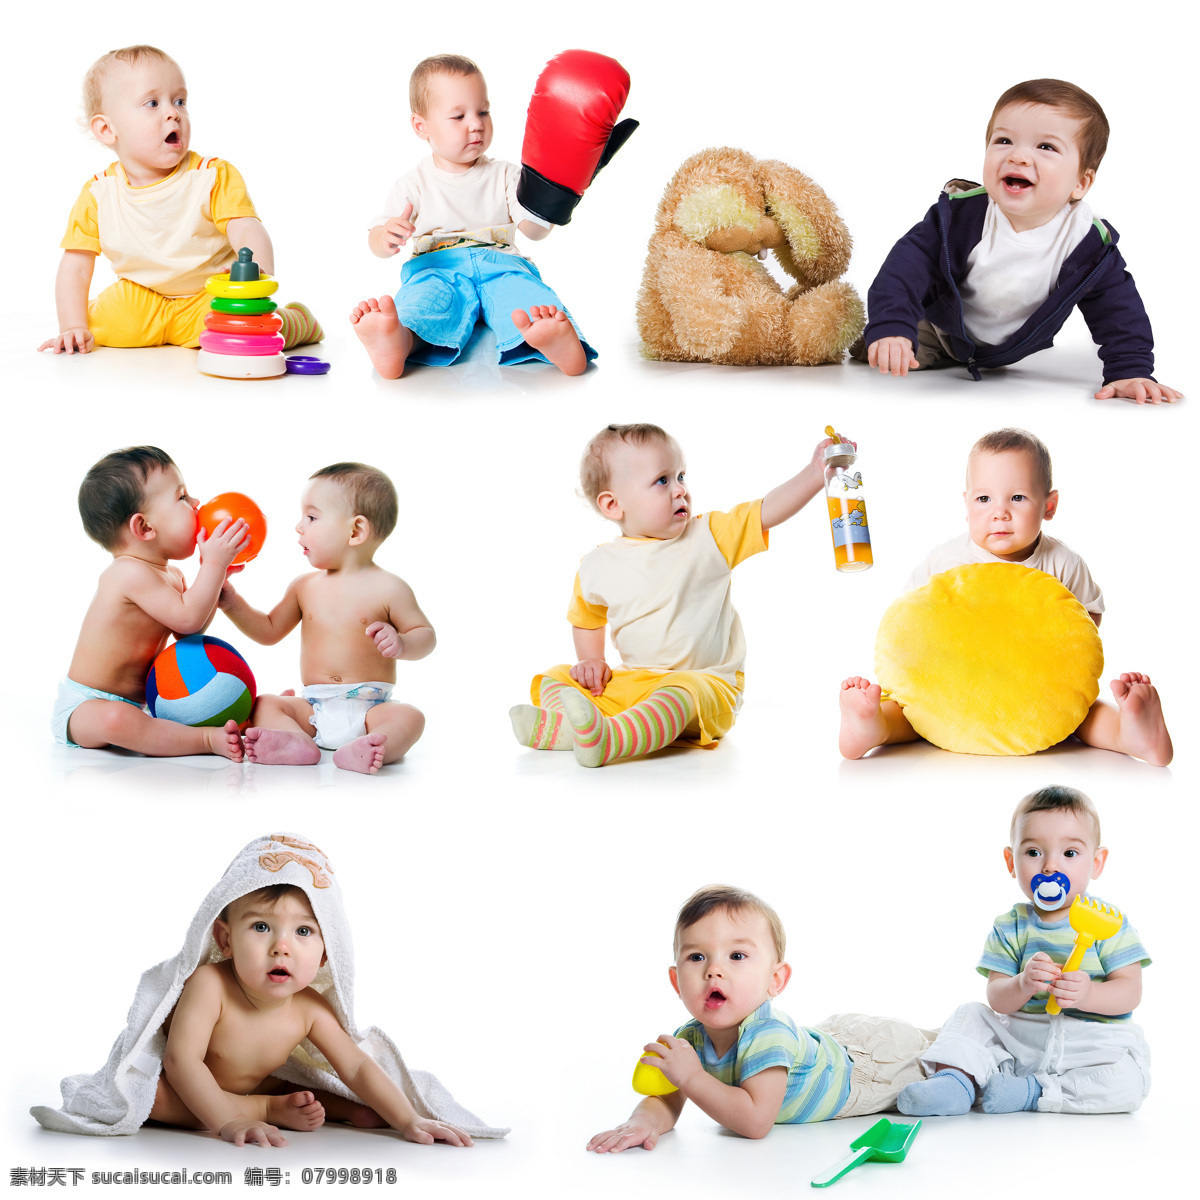 宝宝 图片集 baby 可爱 孩子 小孩 健康宝宝 外国宝宝 宝宝玩耍 宝宝玩具 儿童幼儿 宝宝图片 人物图片